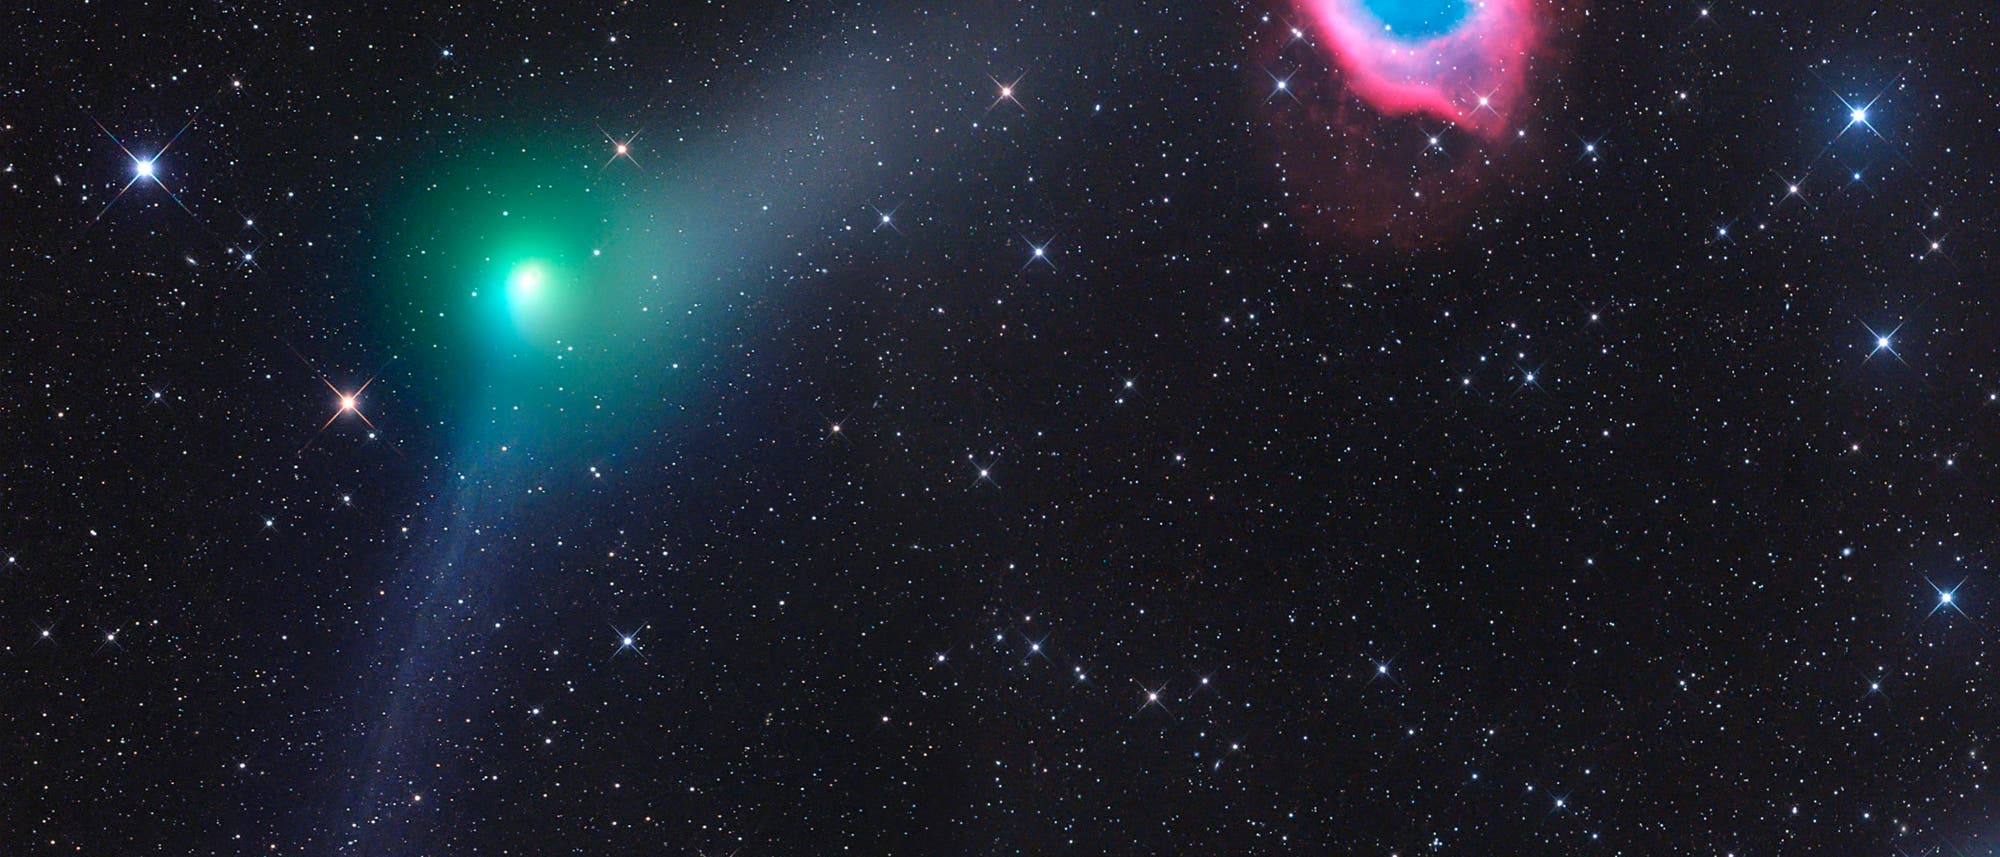 Komet C/2013 X1 (PANSTARRS) trifft Helixnebel